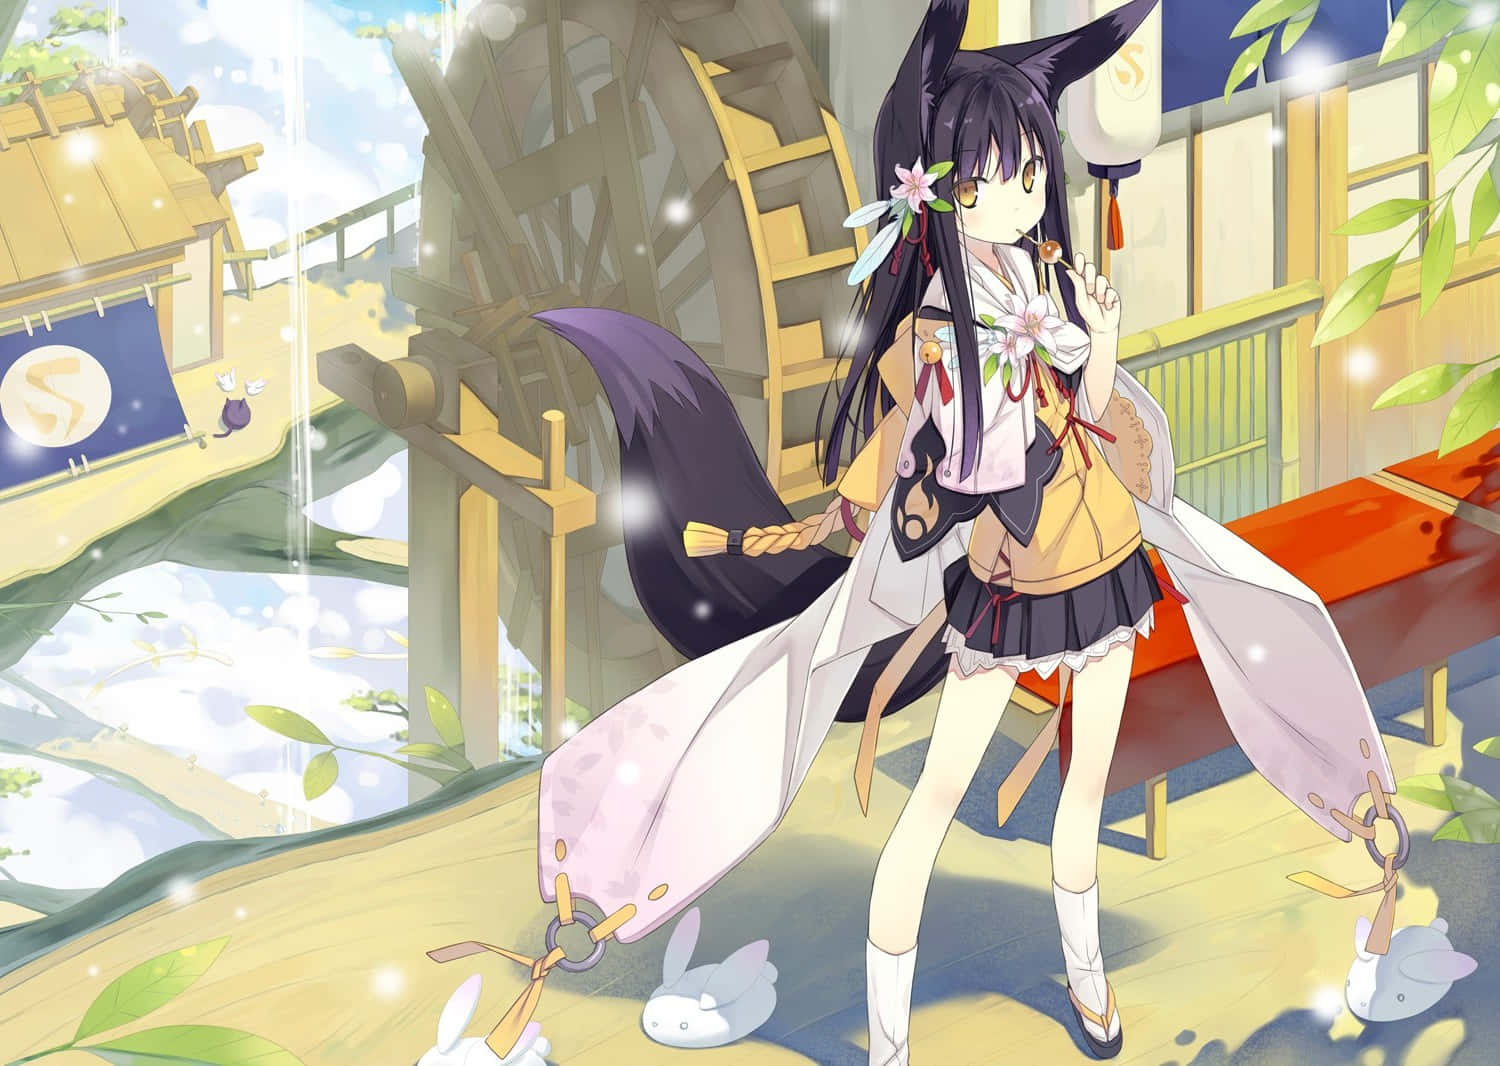 Anime Fox Girl Spiritual Shrine Visit Wallpaper